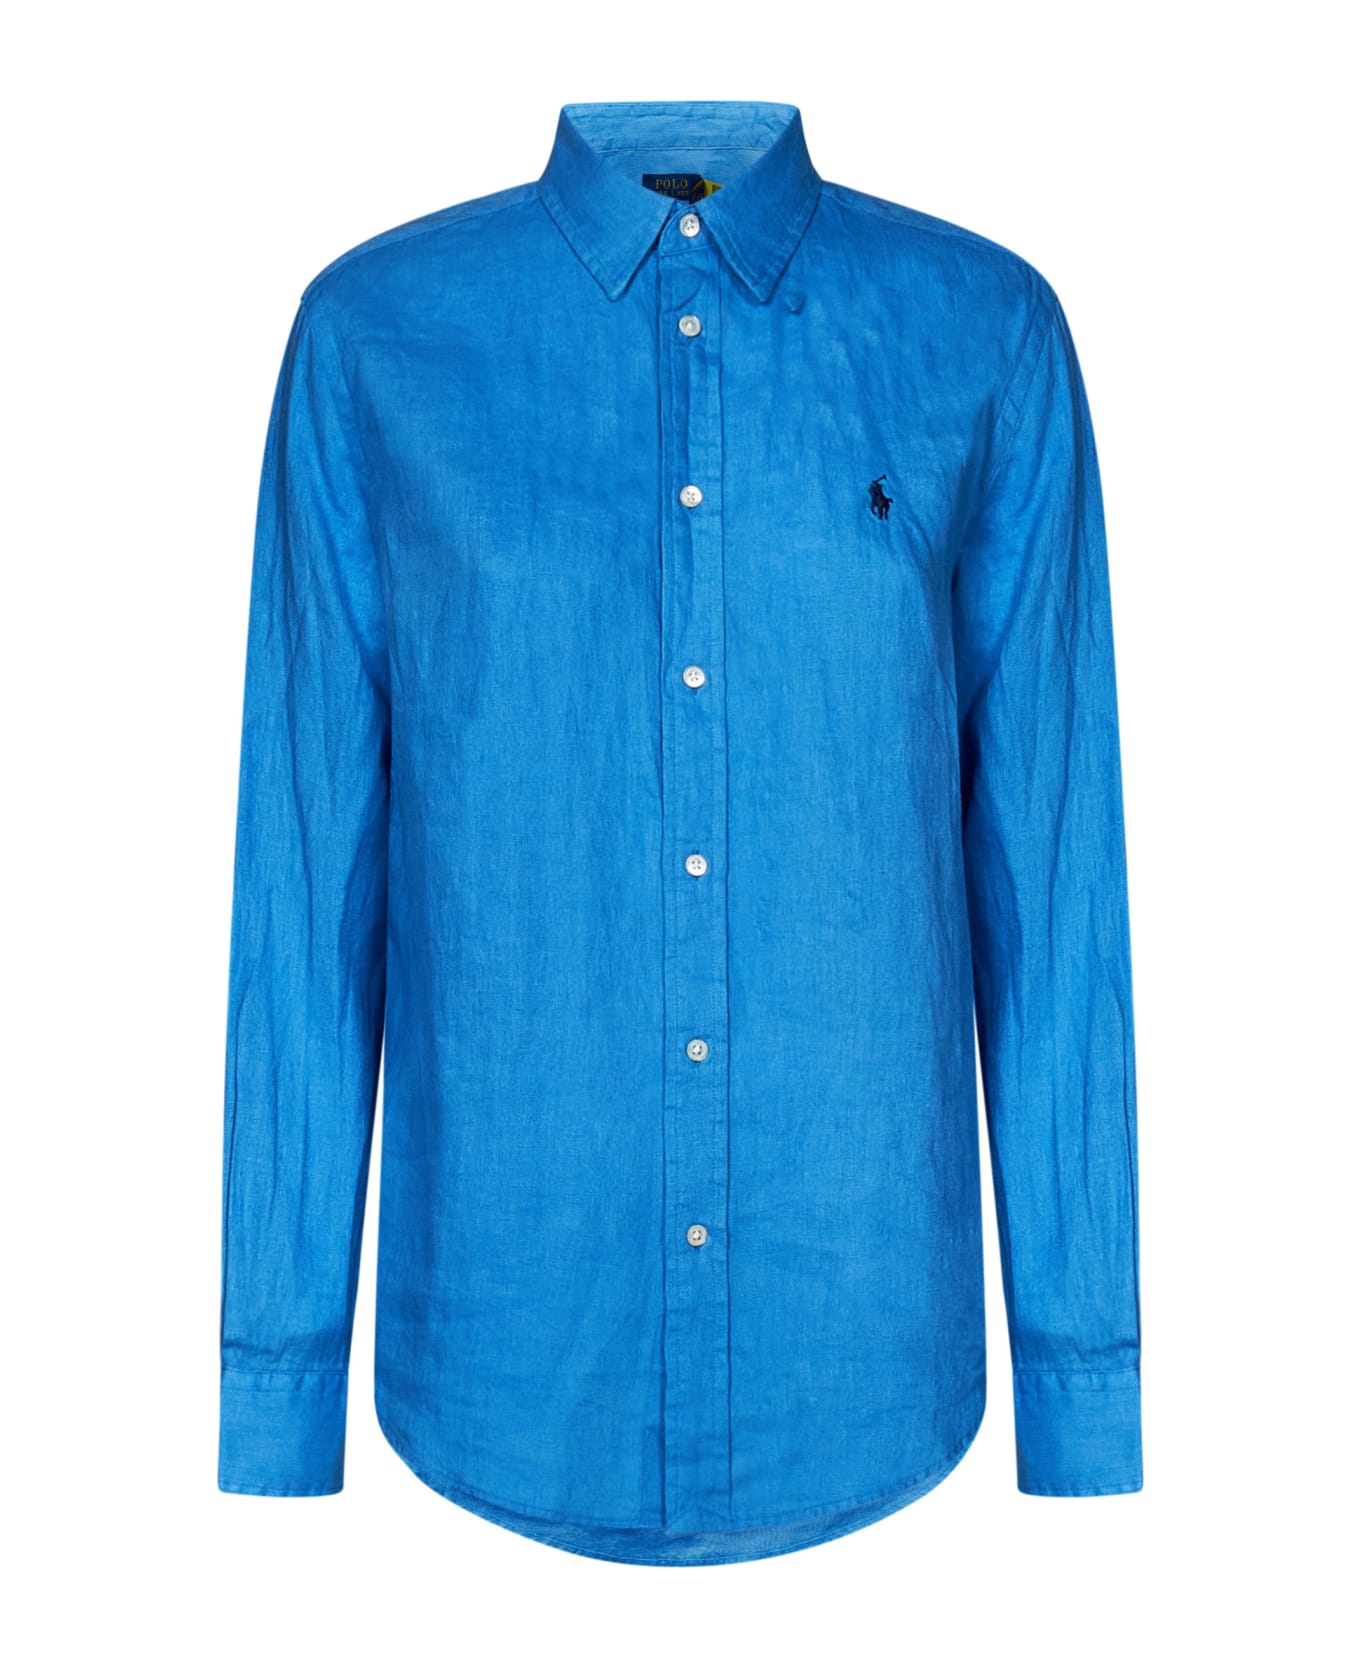 Polo Ralph Lauren Shirt Polo Ralph Lauren - BLUETTE シャツ